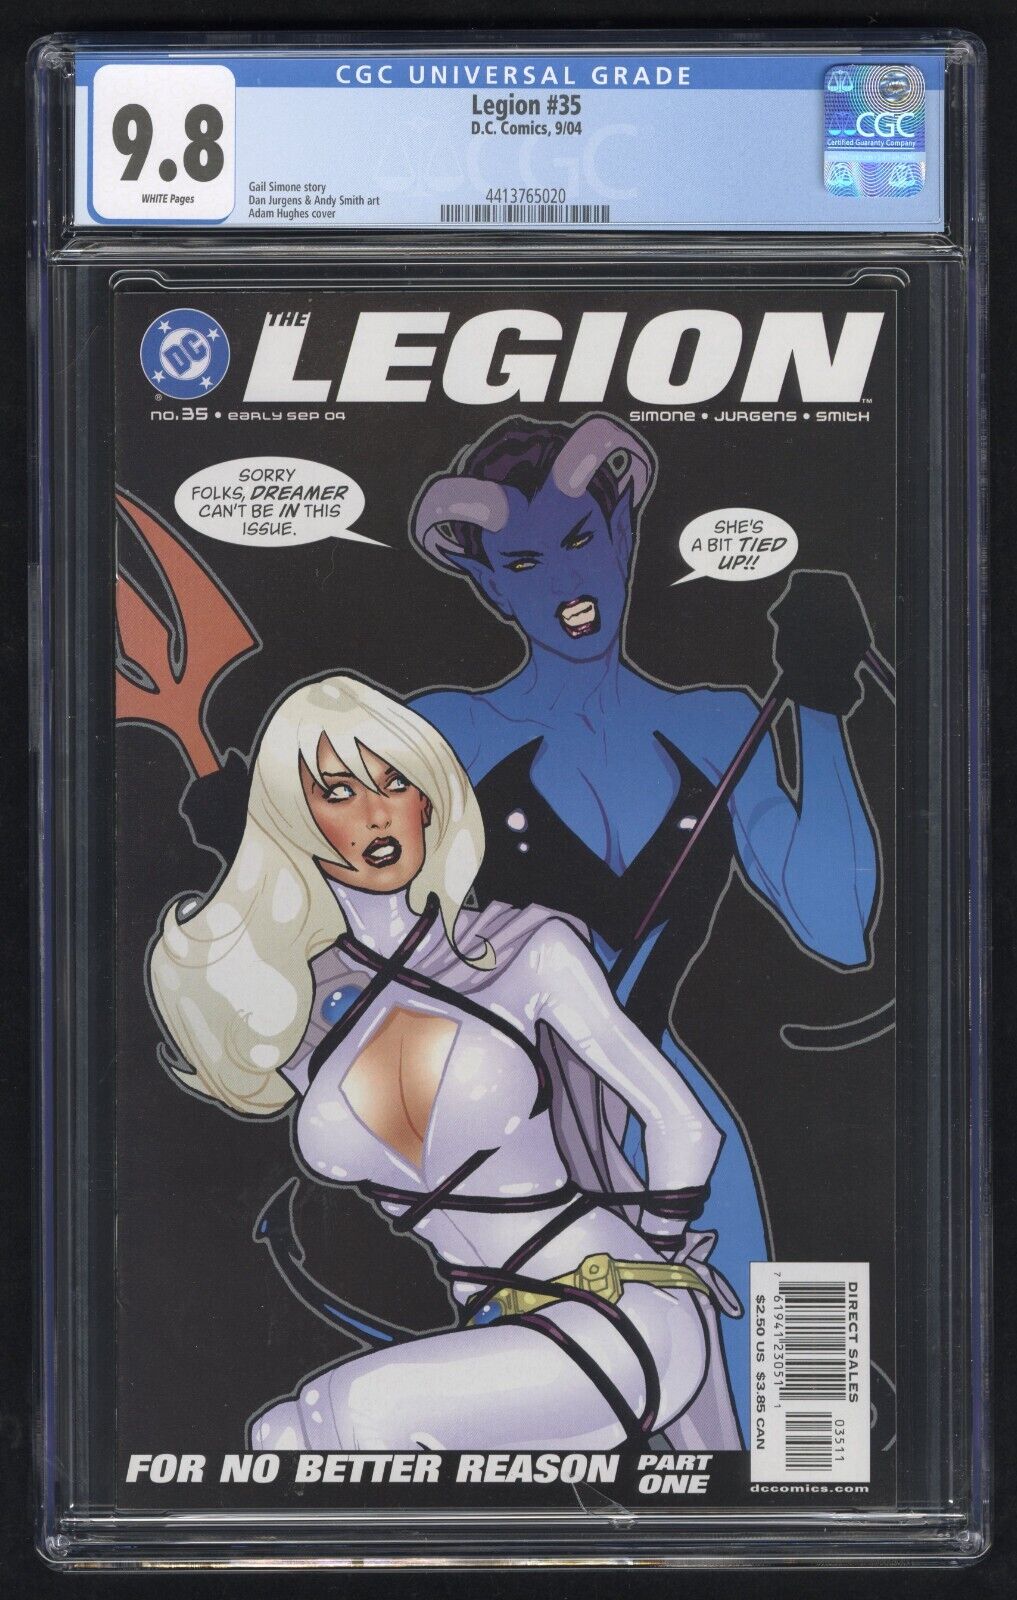 Legion #35 CGC 9.8 (DC 9/04) Adam Hughes cover art